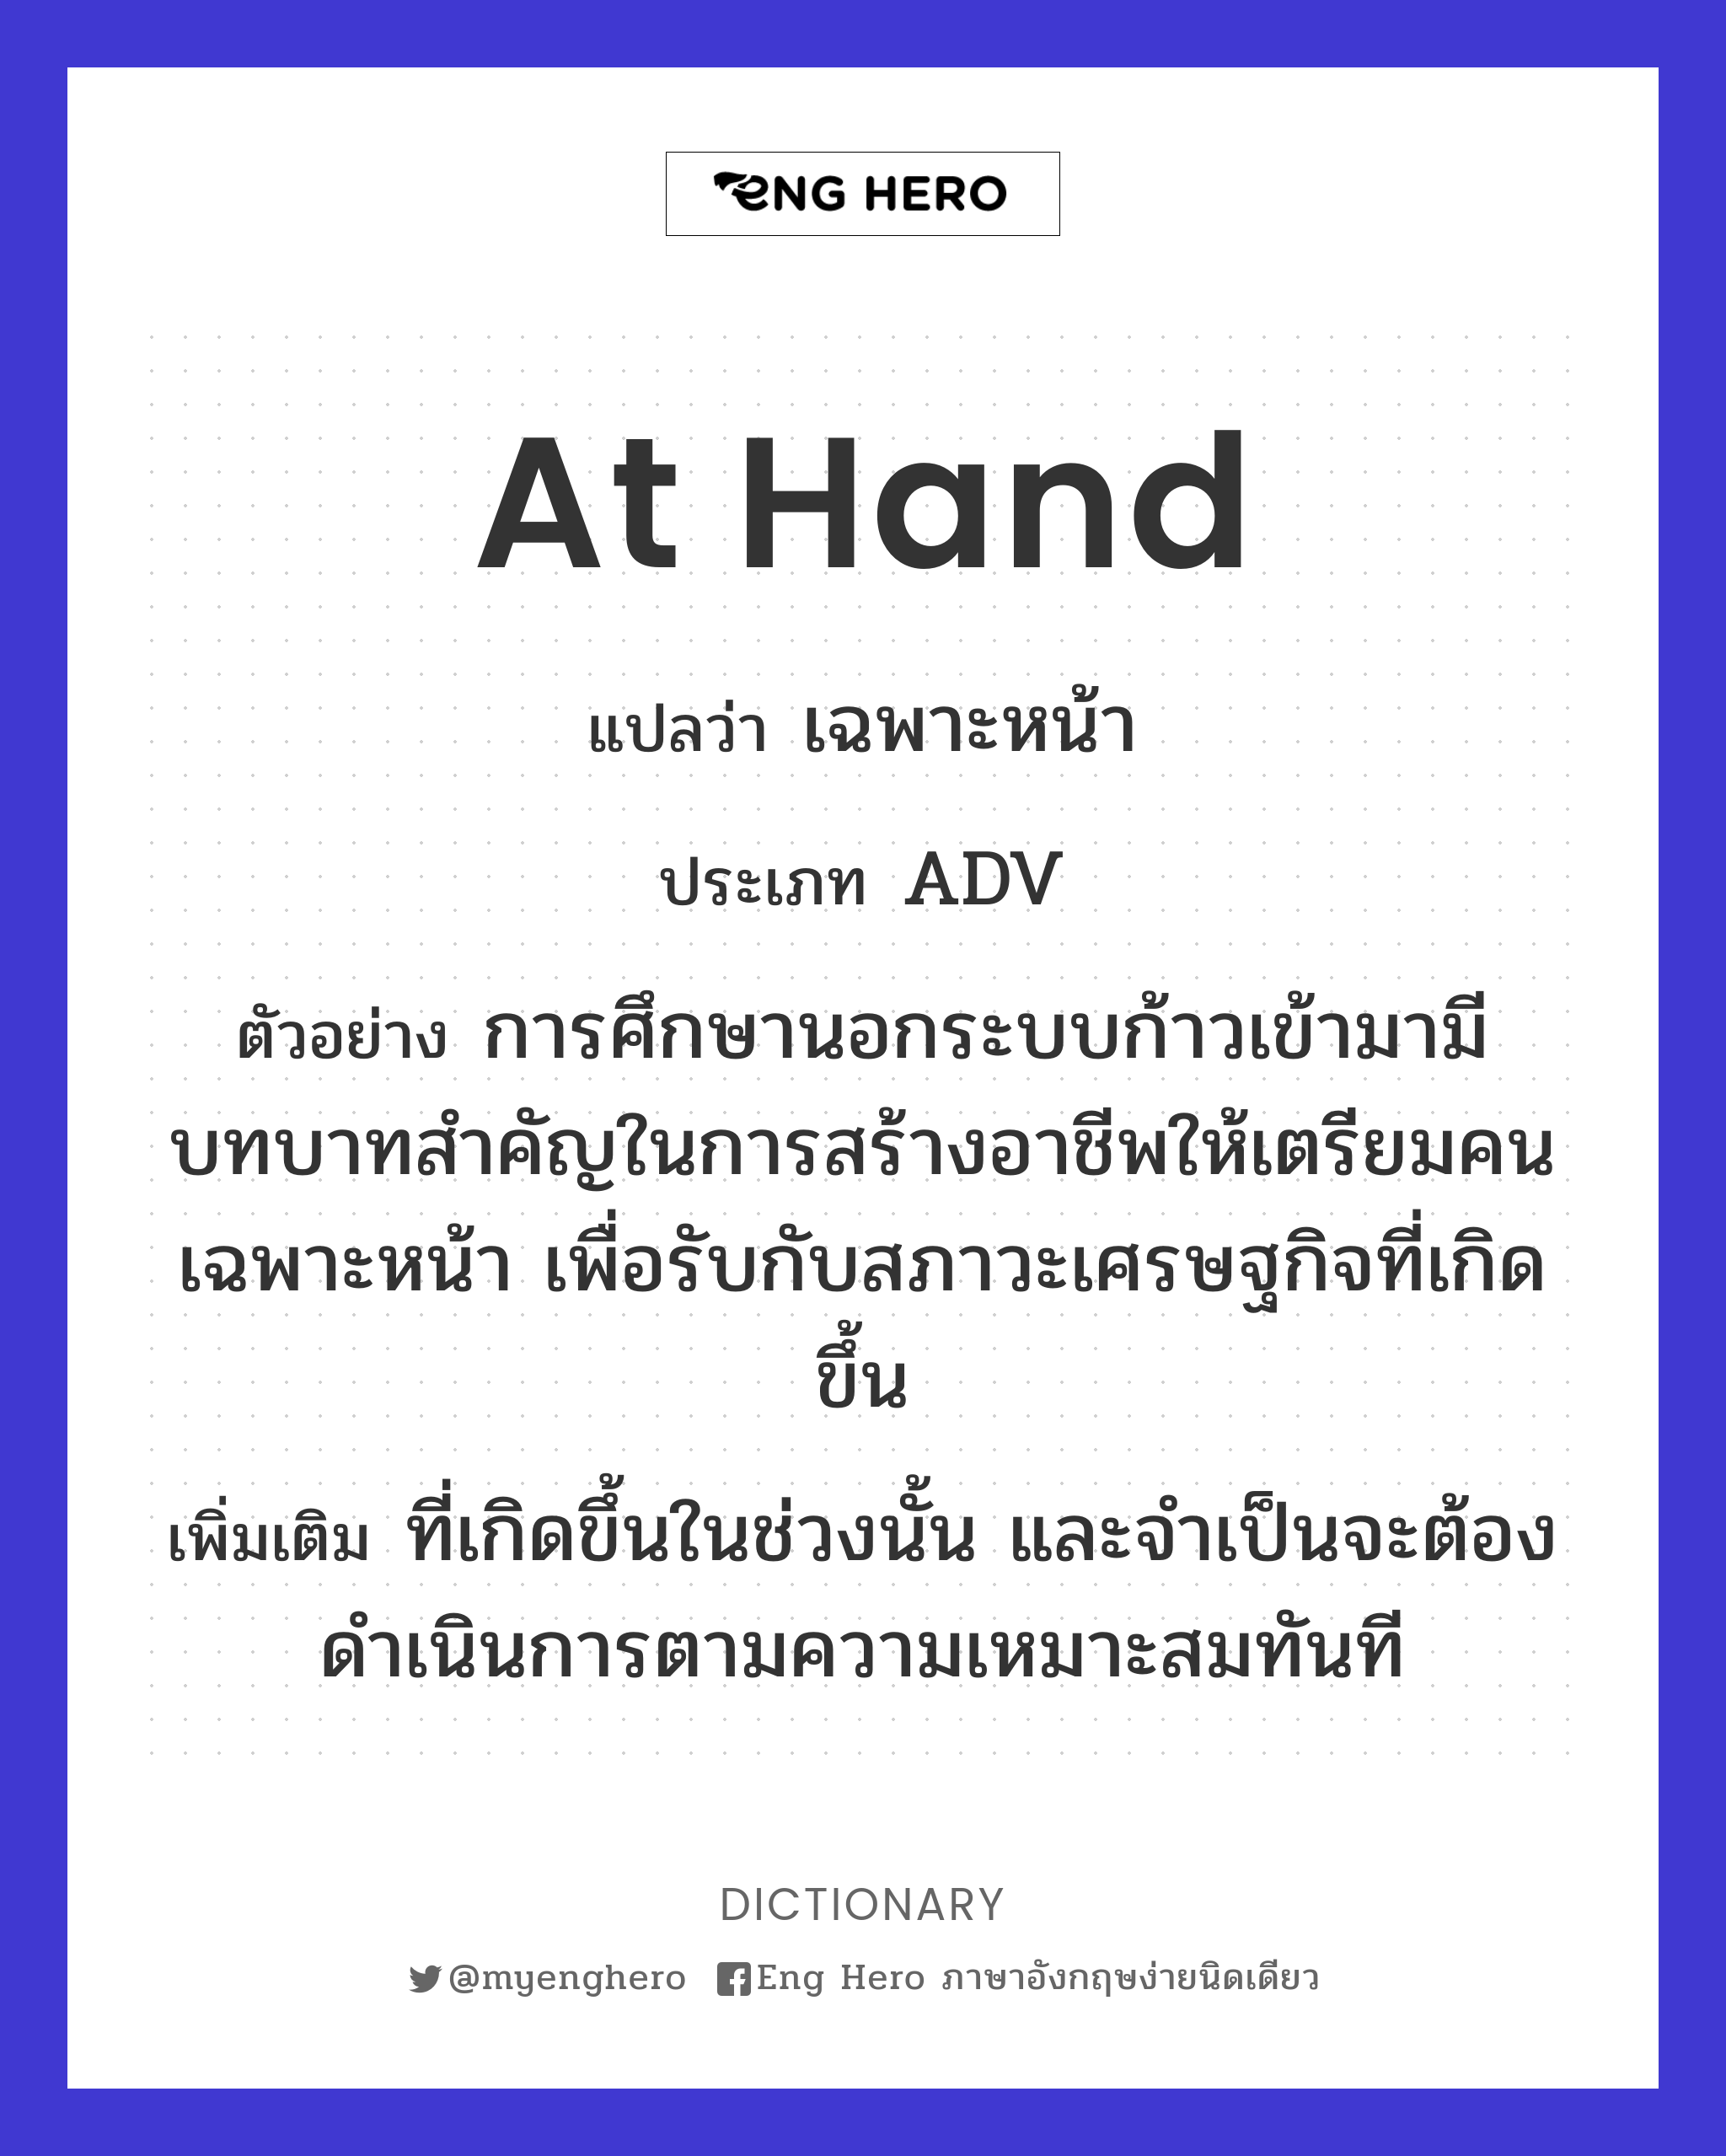 at hand